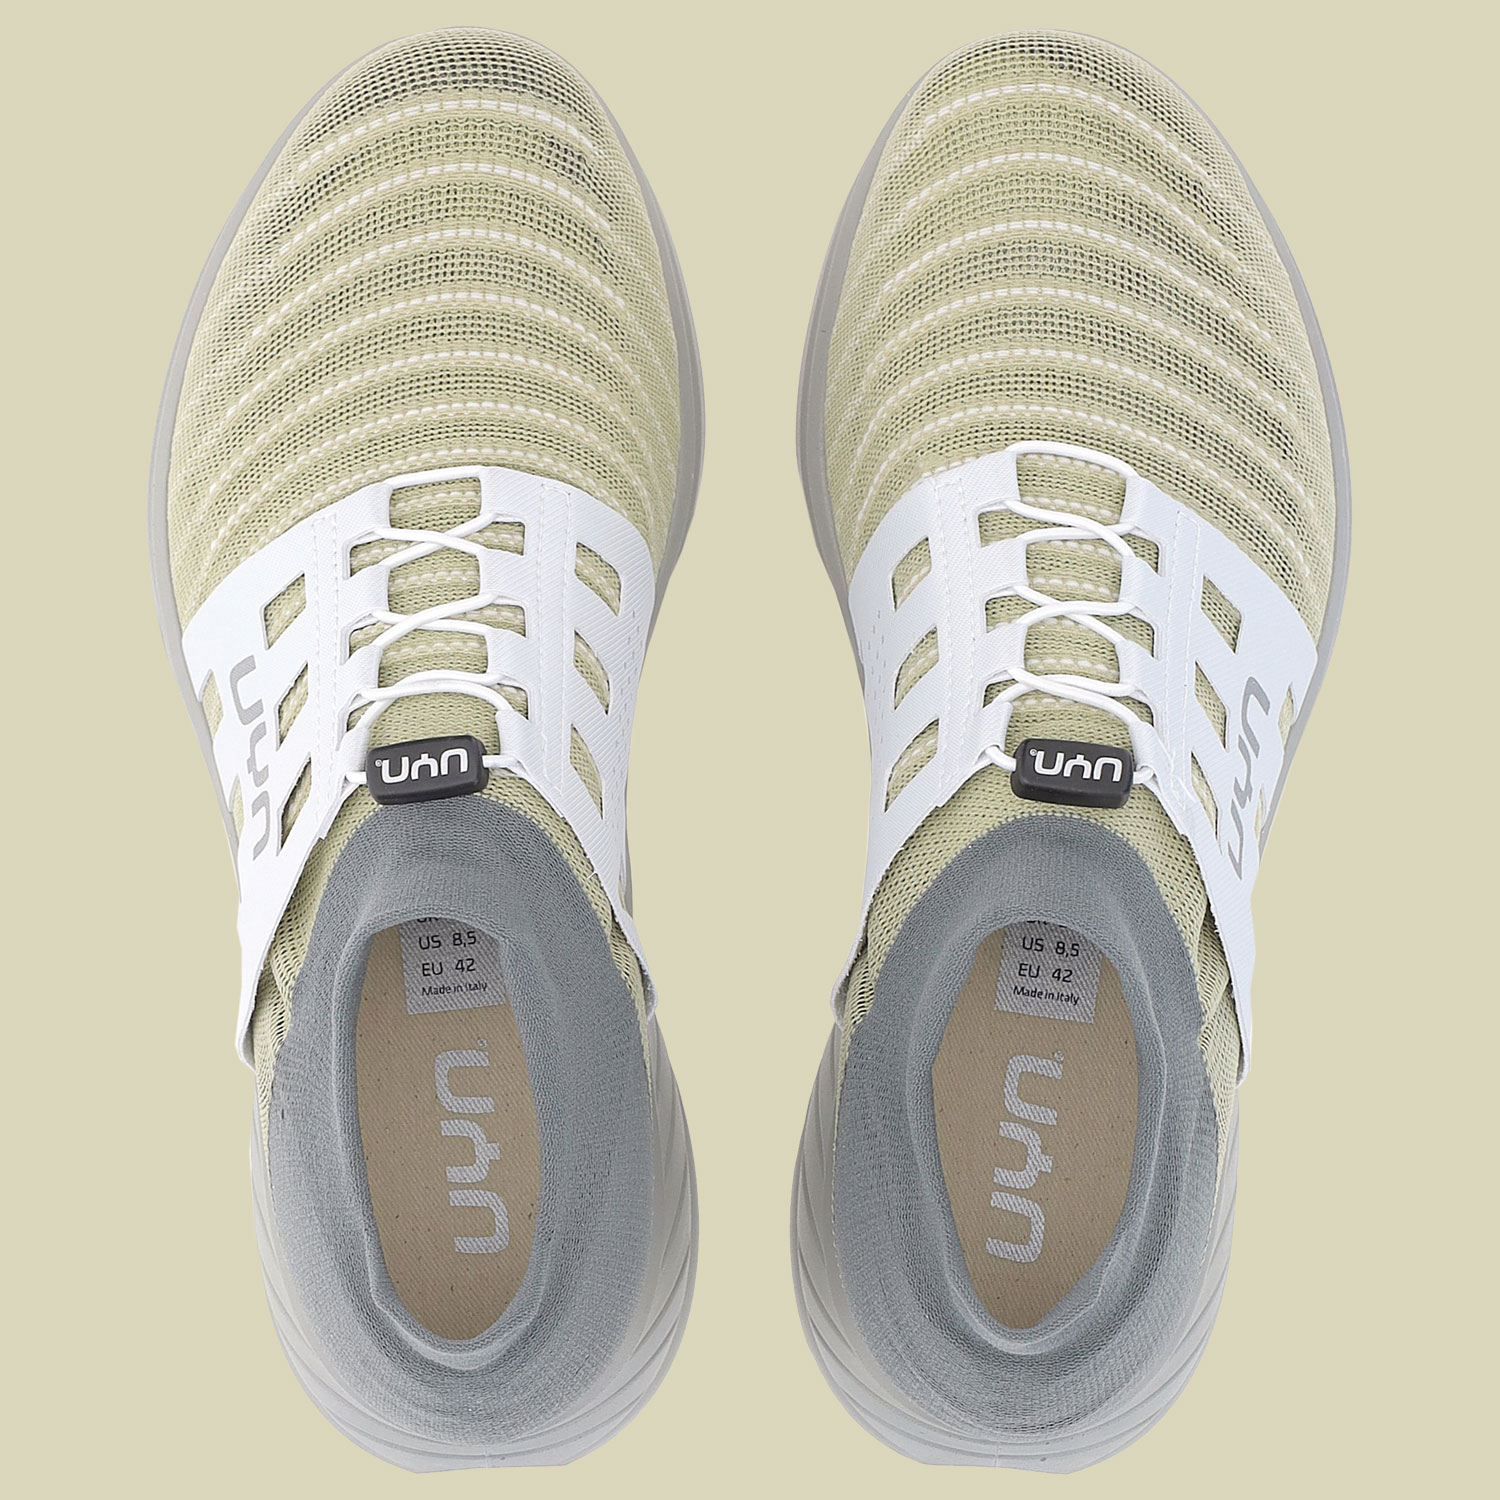 Ecolypt Tune Shoes Grey Sole Women Größe 37 Farbe beige